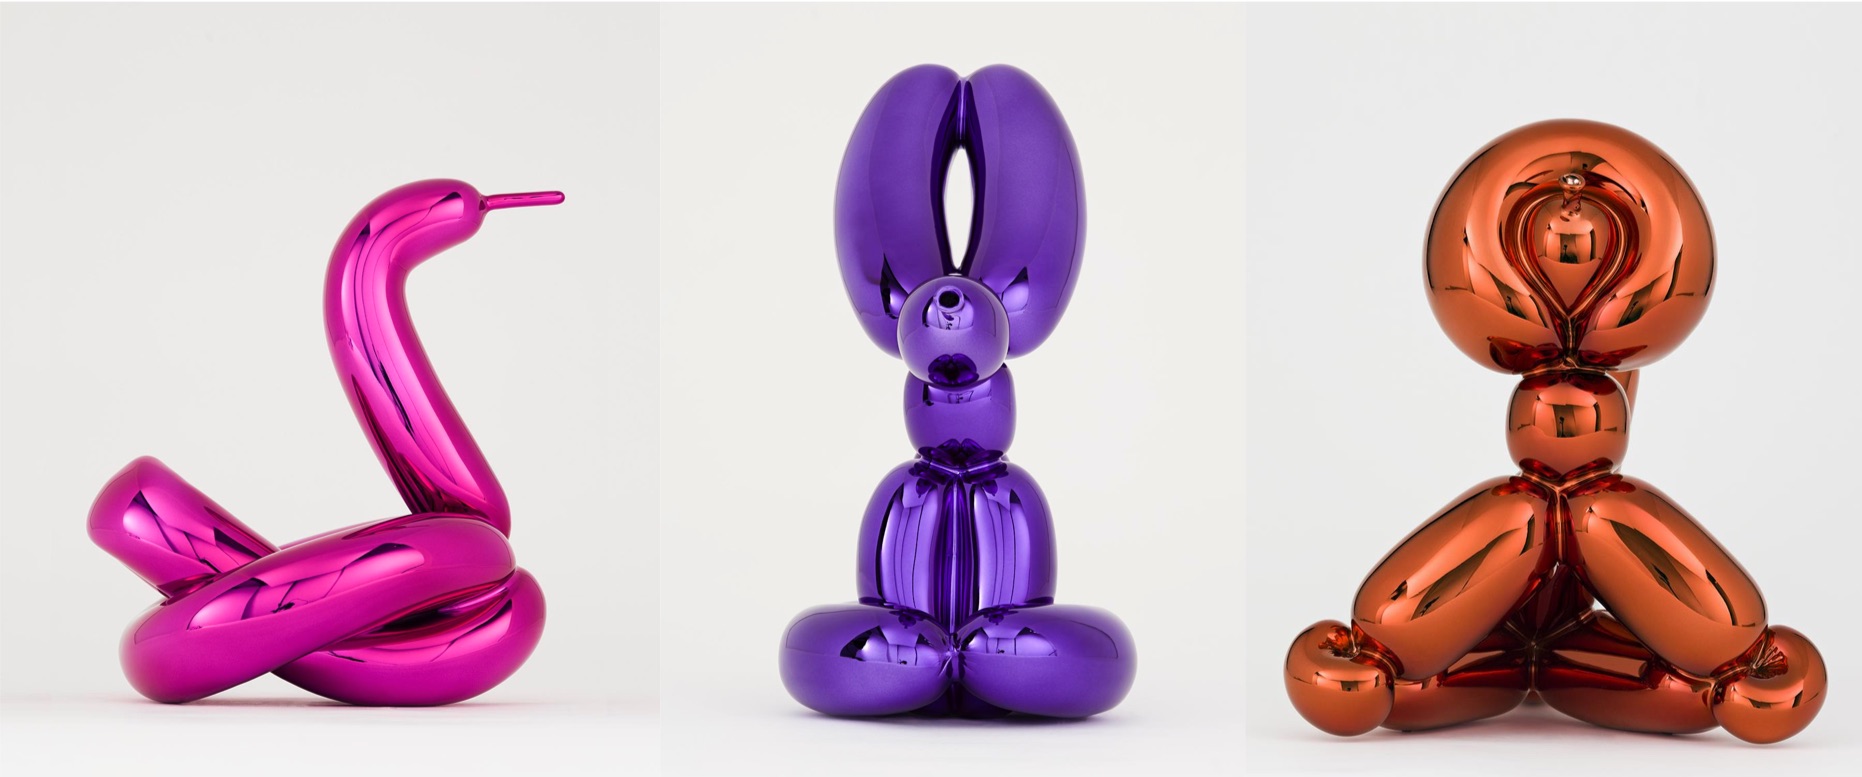 Jeff Koons - Balloon Rabbit (Violet), Balloon Swan (Magenta) and Balloon Monkey (Orange)